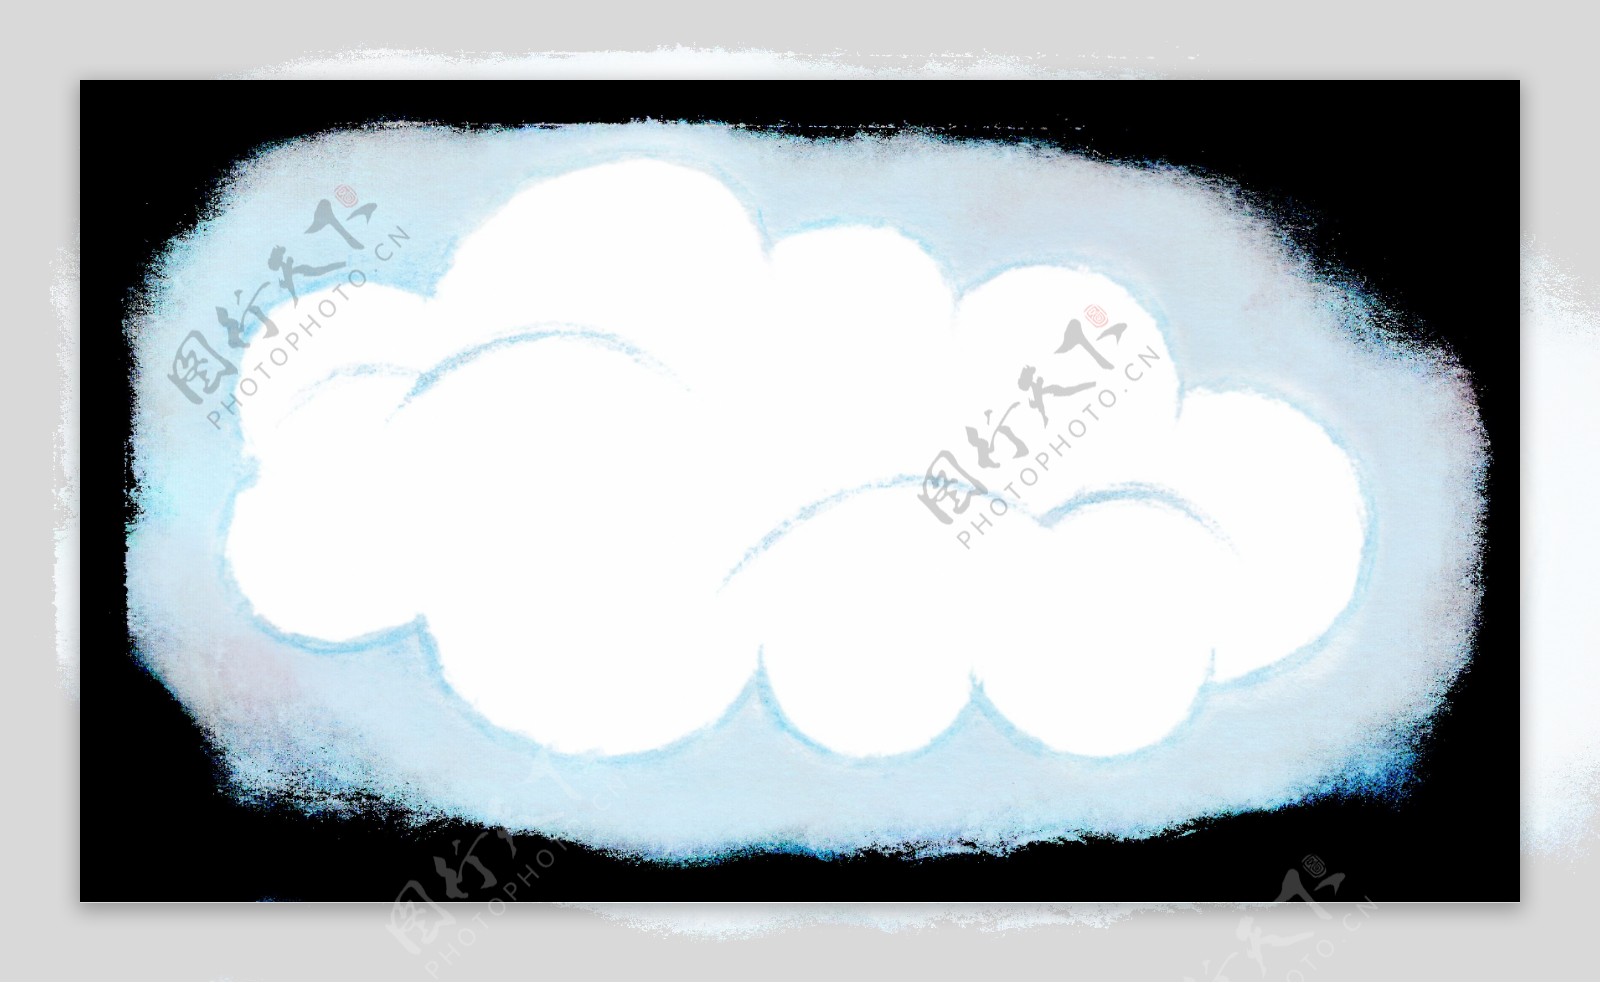 漂浮云朵透明装饰图案